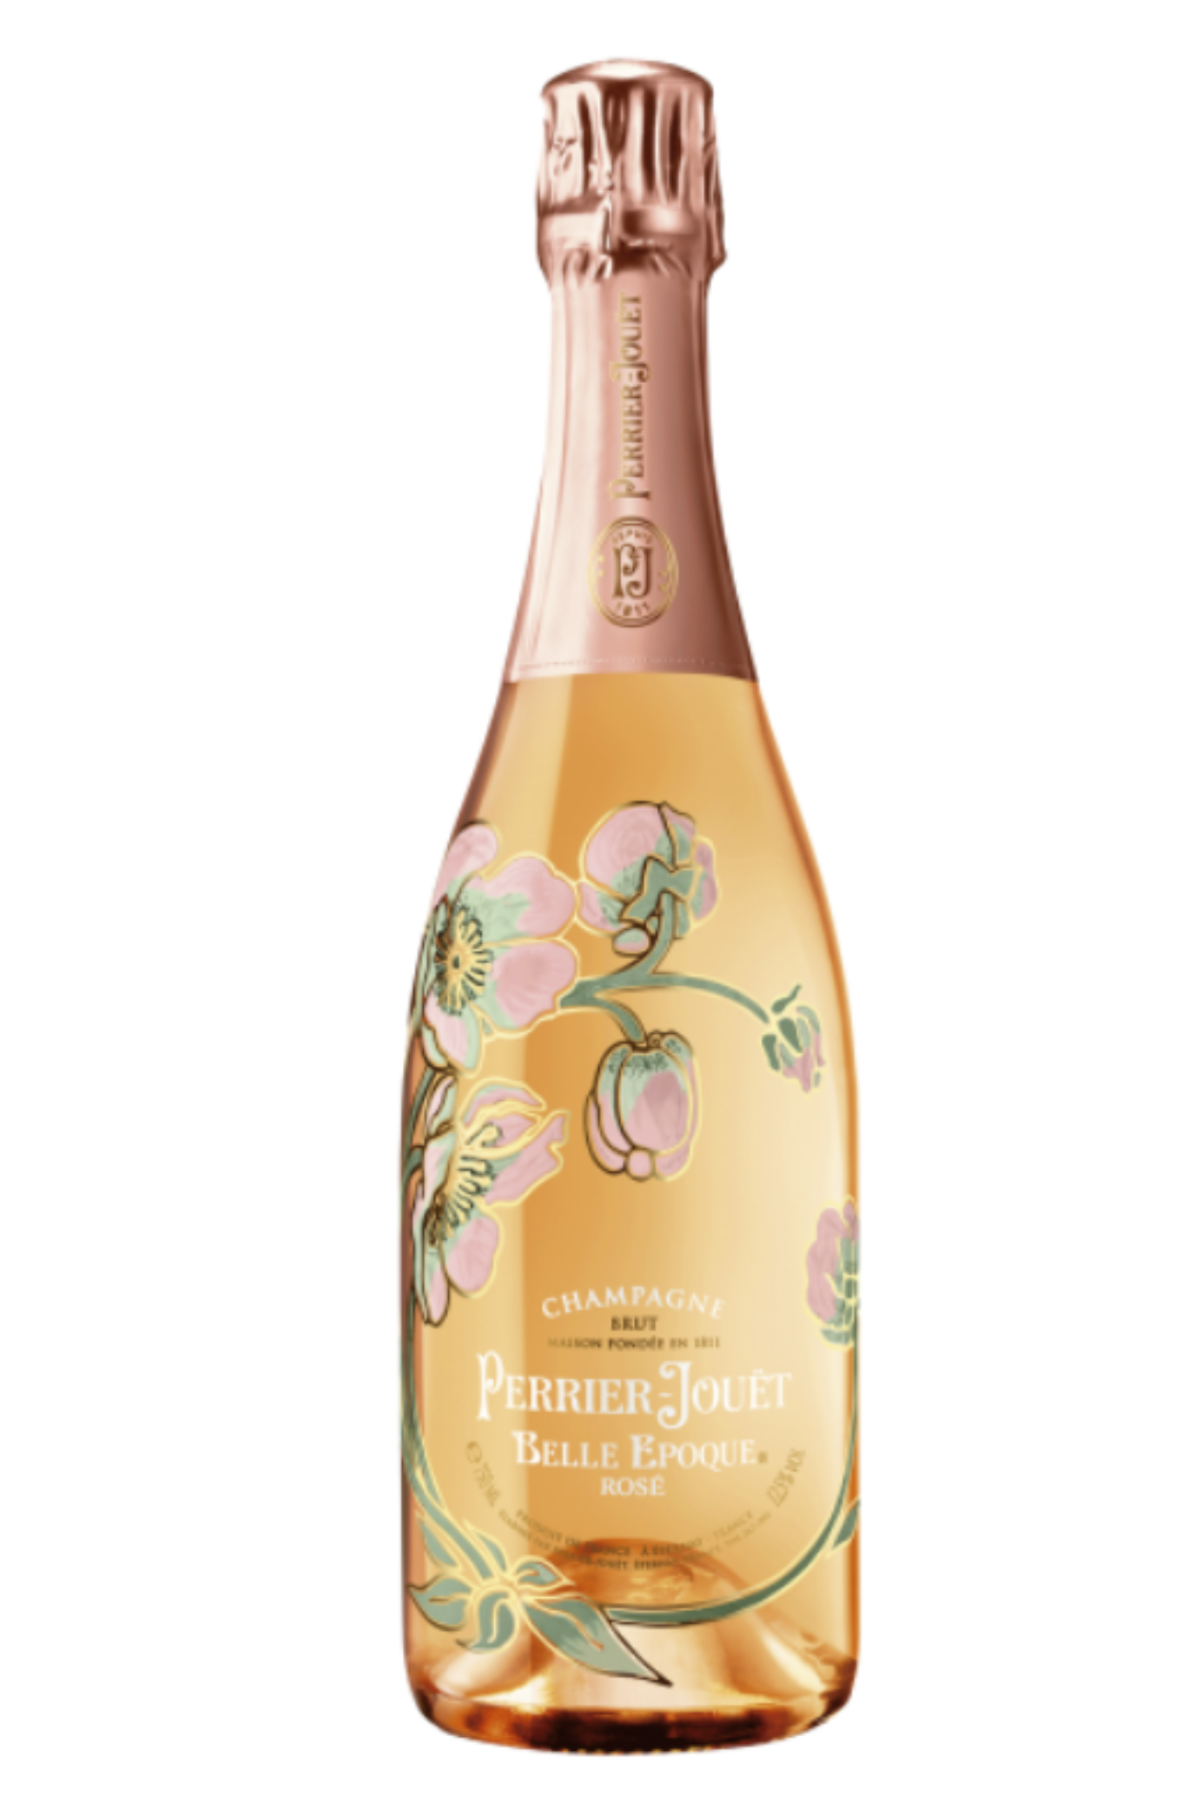 Champagne Belle Epoque Rosè 2013 - Perrier-Jouët